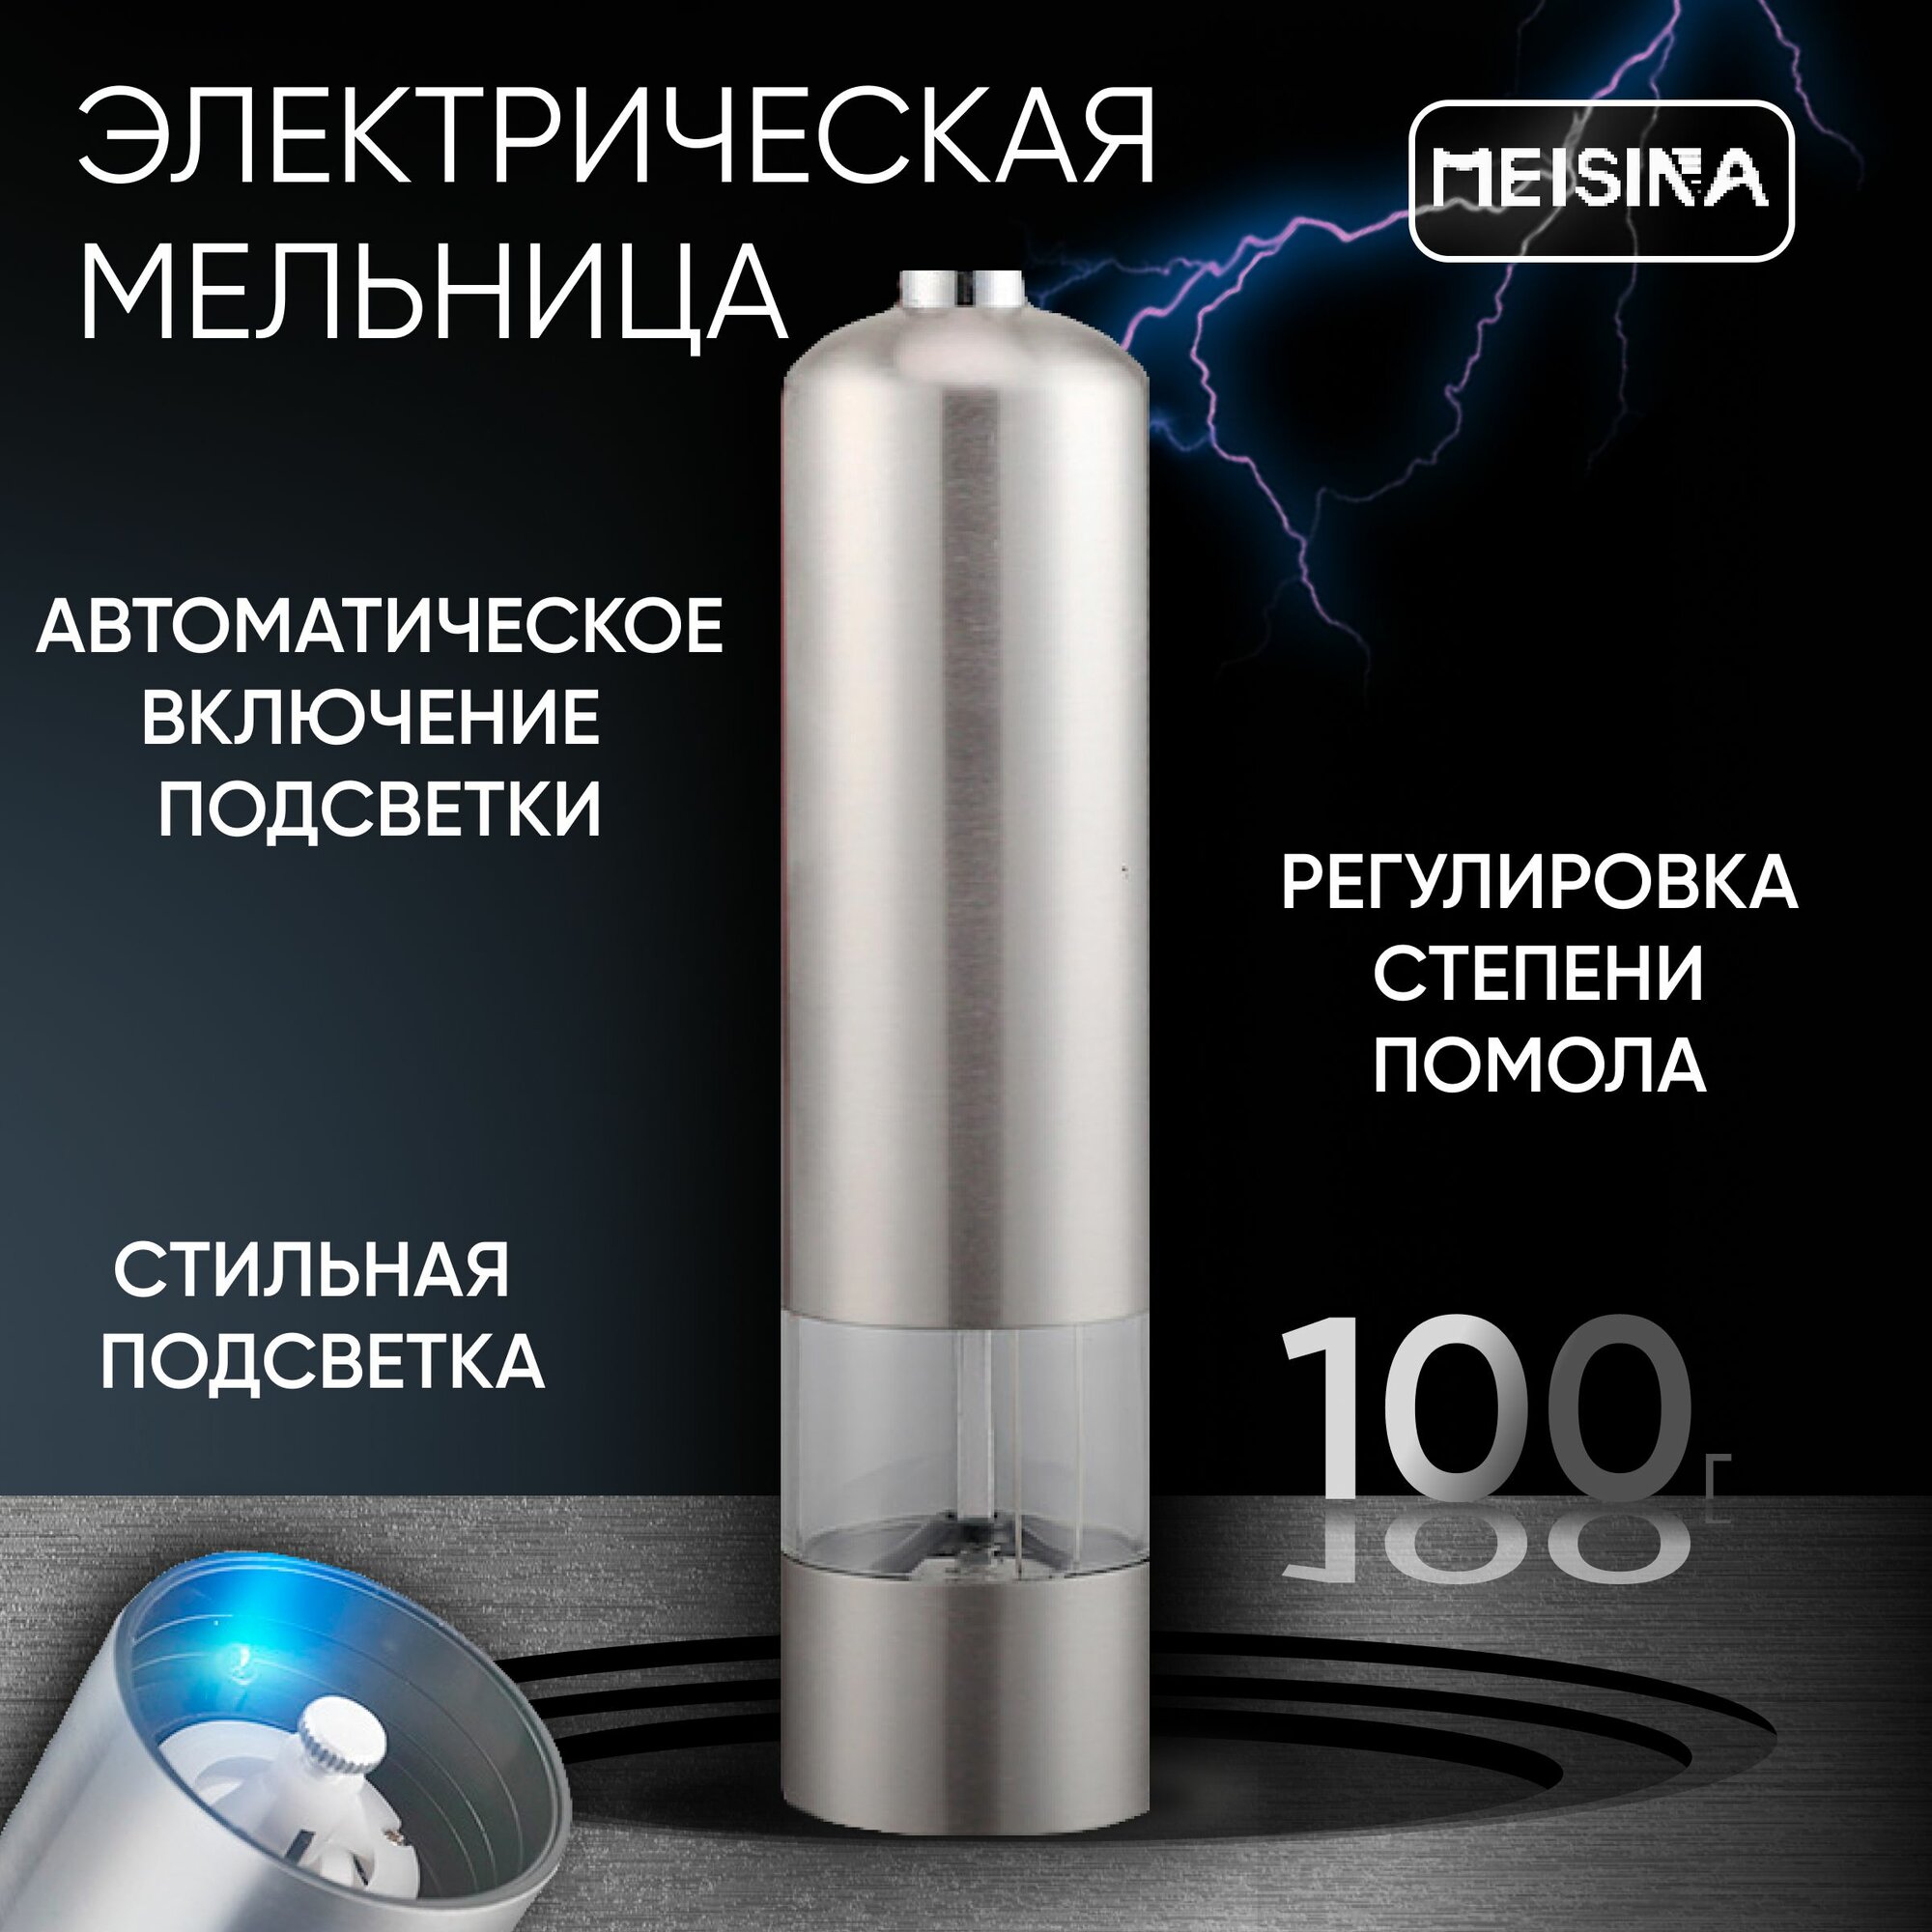 Мельница для специй электрическая с LED подсветкой, с автоматическим помолом, для перца и соли "Meisina". Электромельница металлическая, цвет корпуса серебристый